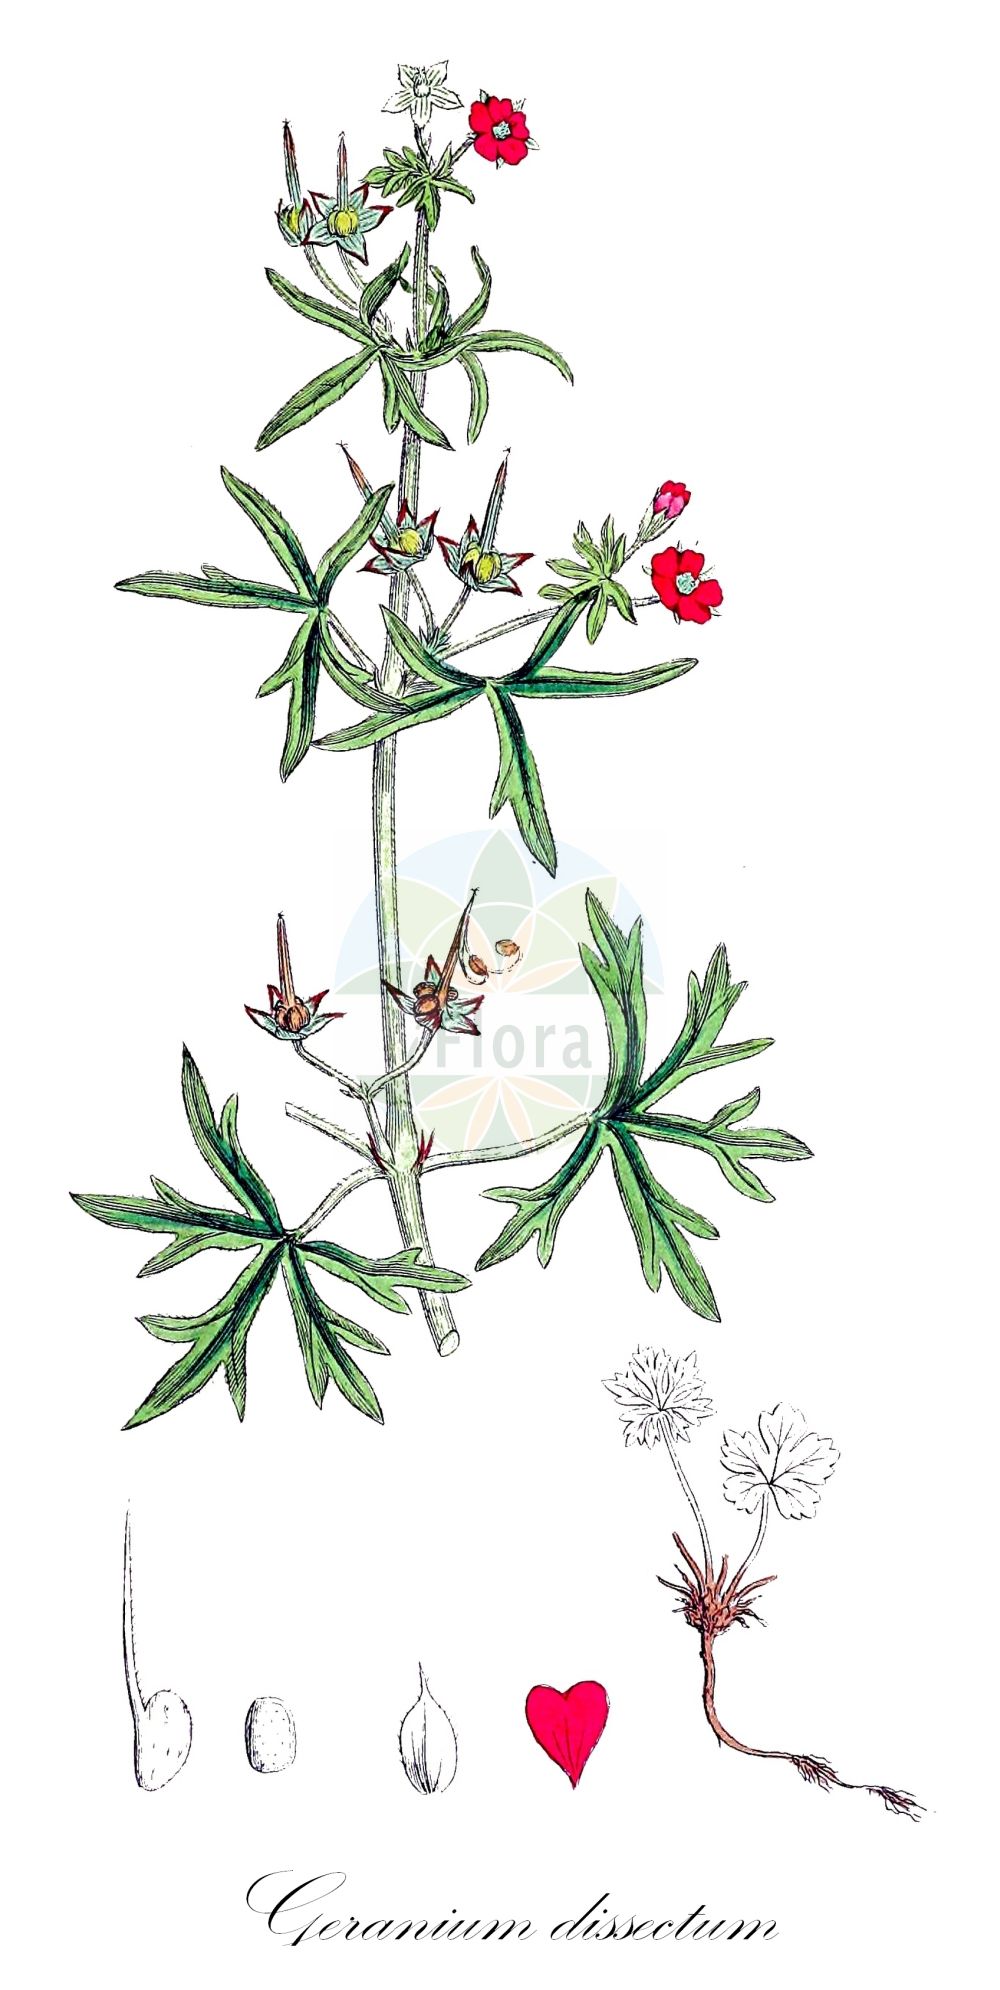 Historische Abbildung von Geranium dissectum (Schlitzblättriger Storchschnabel - Cut-leaved Crane's-Bill). Das Bild zeigt Blatt, Bluete, Frucht und Same. ---- Historical Drawing of Geranium dissectum (Schlitzblättriger Storchschnabel - Cut-leaved Crane's-Bill). The image is showing leaf, flower, fruit and seed.(Geranium dissectum,Schlitzblättriger Storchschnabel,Cut-leaved Crane's-Bill,Geranium angustifolium,Geranium baumgartenianum,Geranium dissectum,Geranium furcatum,Geranium pusillum,Schlitzblaettriger Storchschnabel,Cut-leaved Crane's-Bill,Cut-leaf Geranium,Geranium,Storchschnabel,Crane's-bill,Geraniaceae,Storchschnabelgewächse,Geranium family,Blatt,Bluete,Frucht,Same,leaf,flower,fruit,seed,Sowerby (1790-1813))